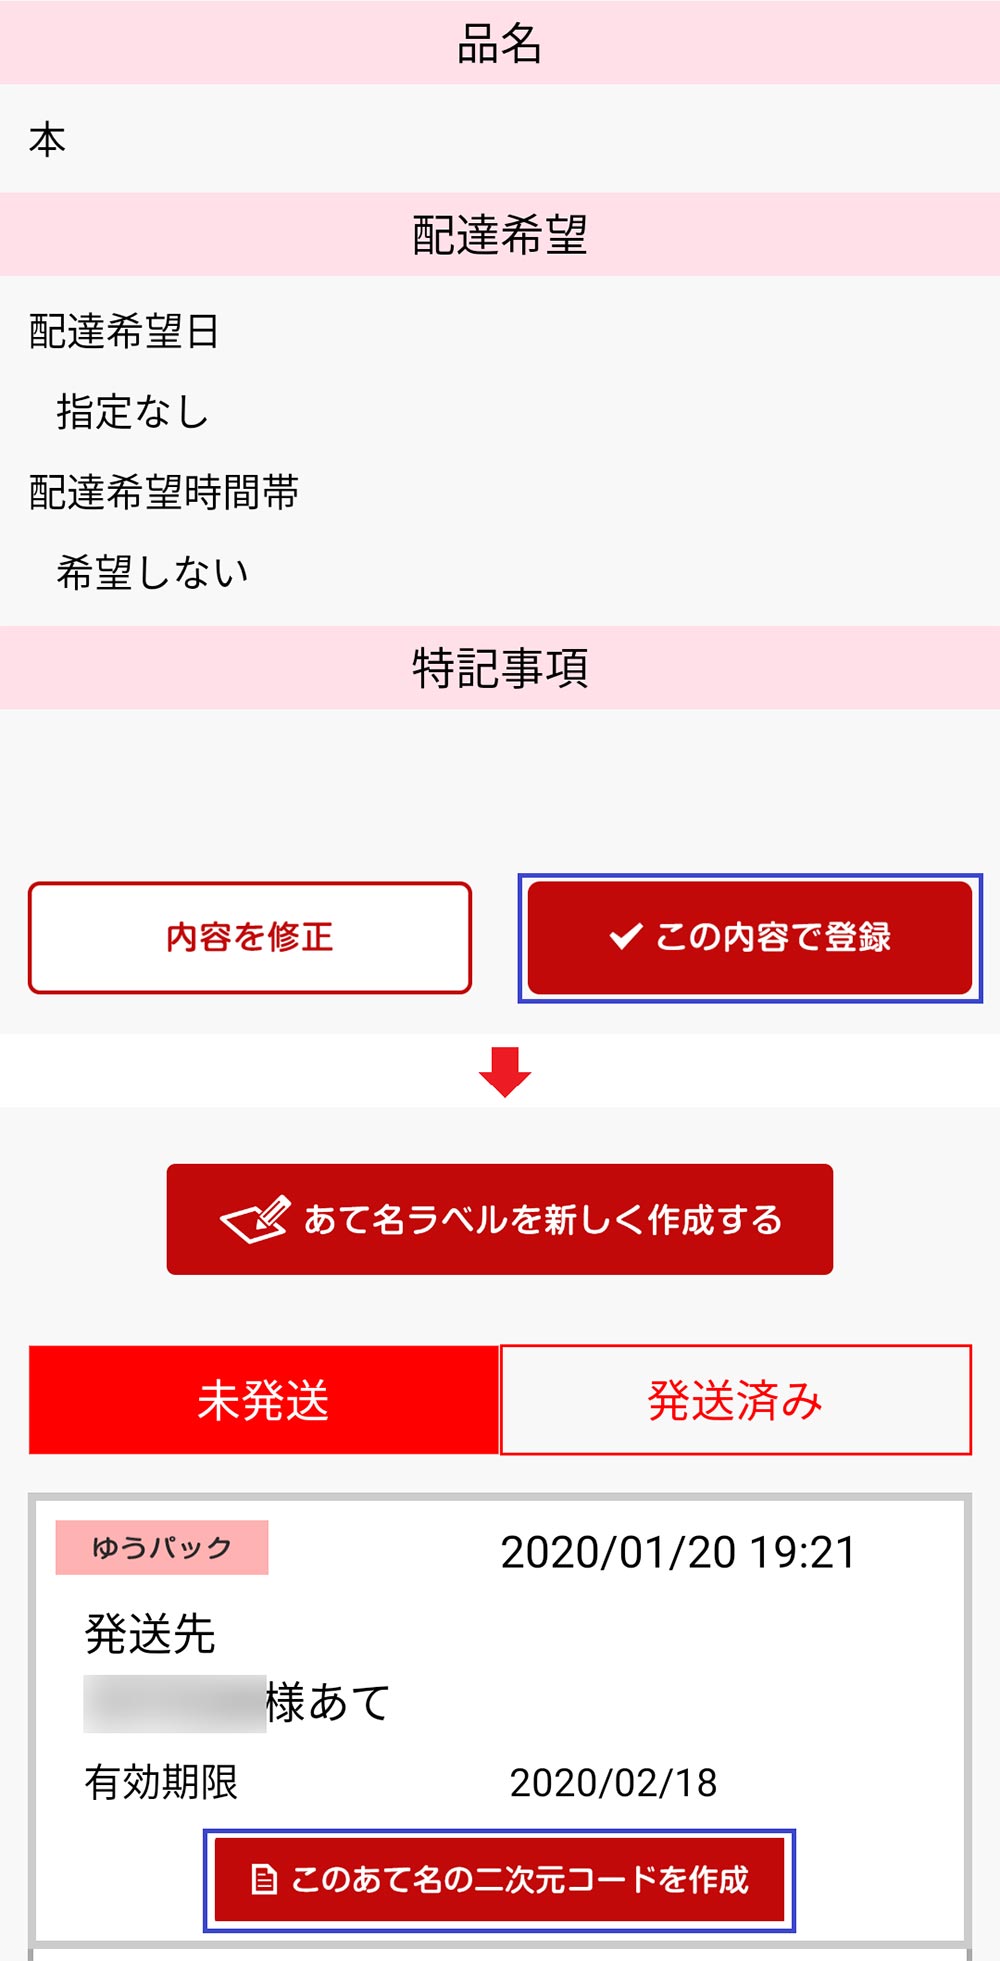 日本郵便アプリを使って「ゆうプリタッチ」であて名ラベルを作成する 